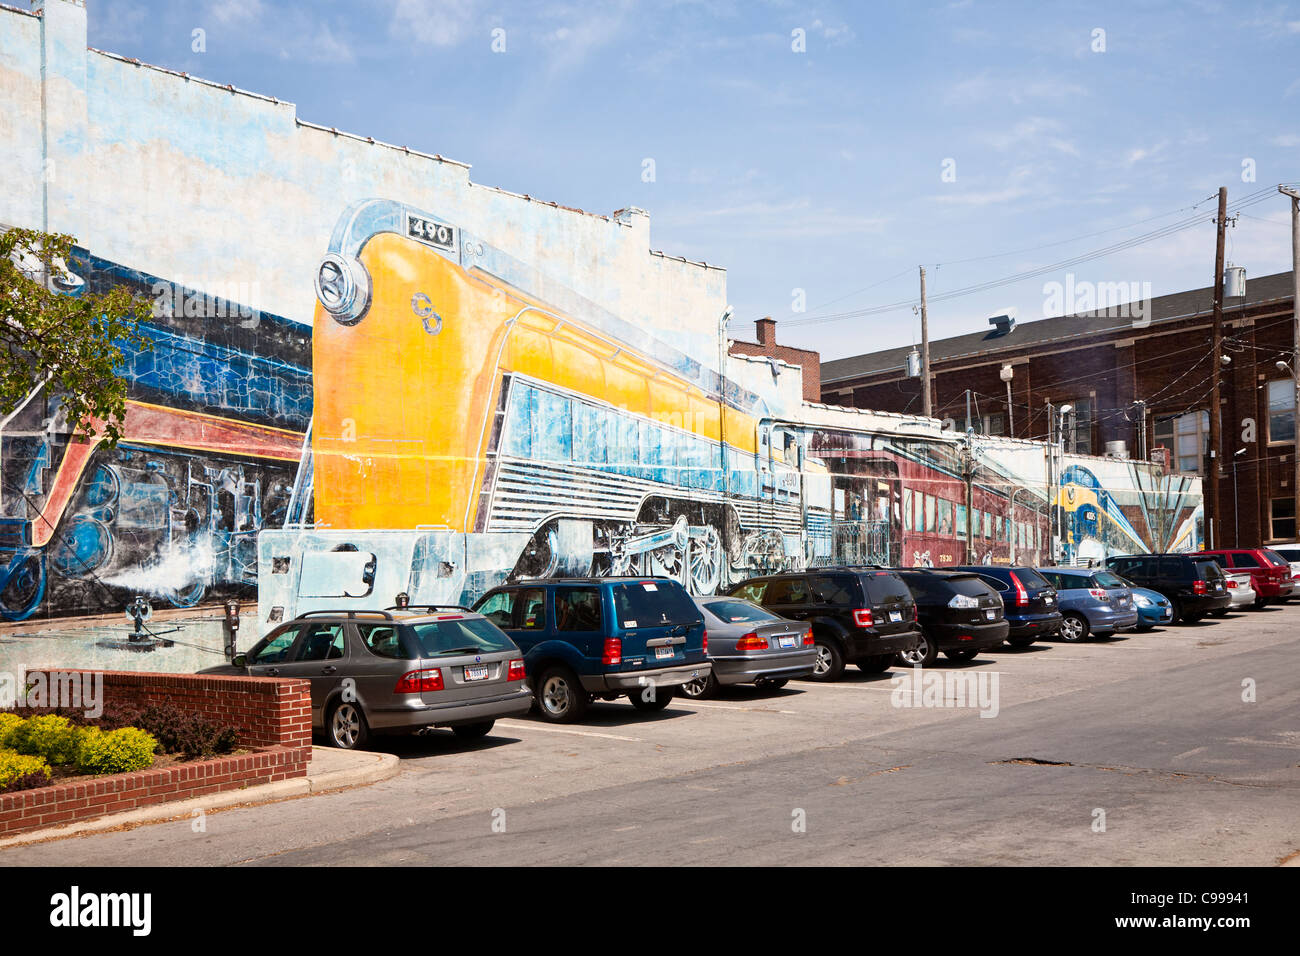 Les Trains, une murale peinte sur un bâtiment dans le quartier nord de courte de Columbus, Ohio. Banque D'Images